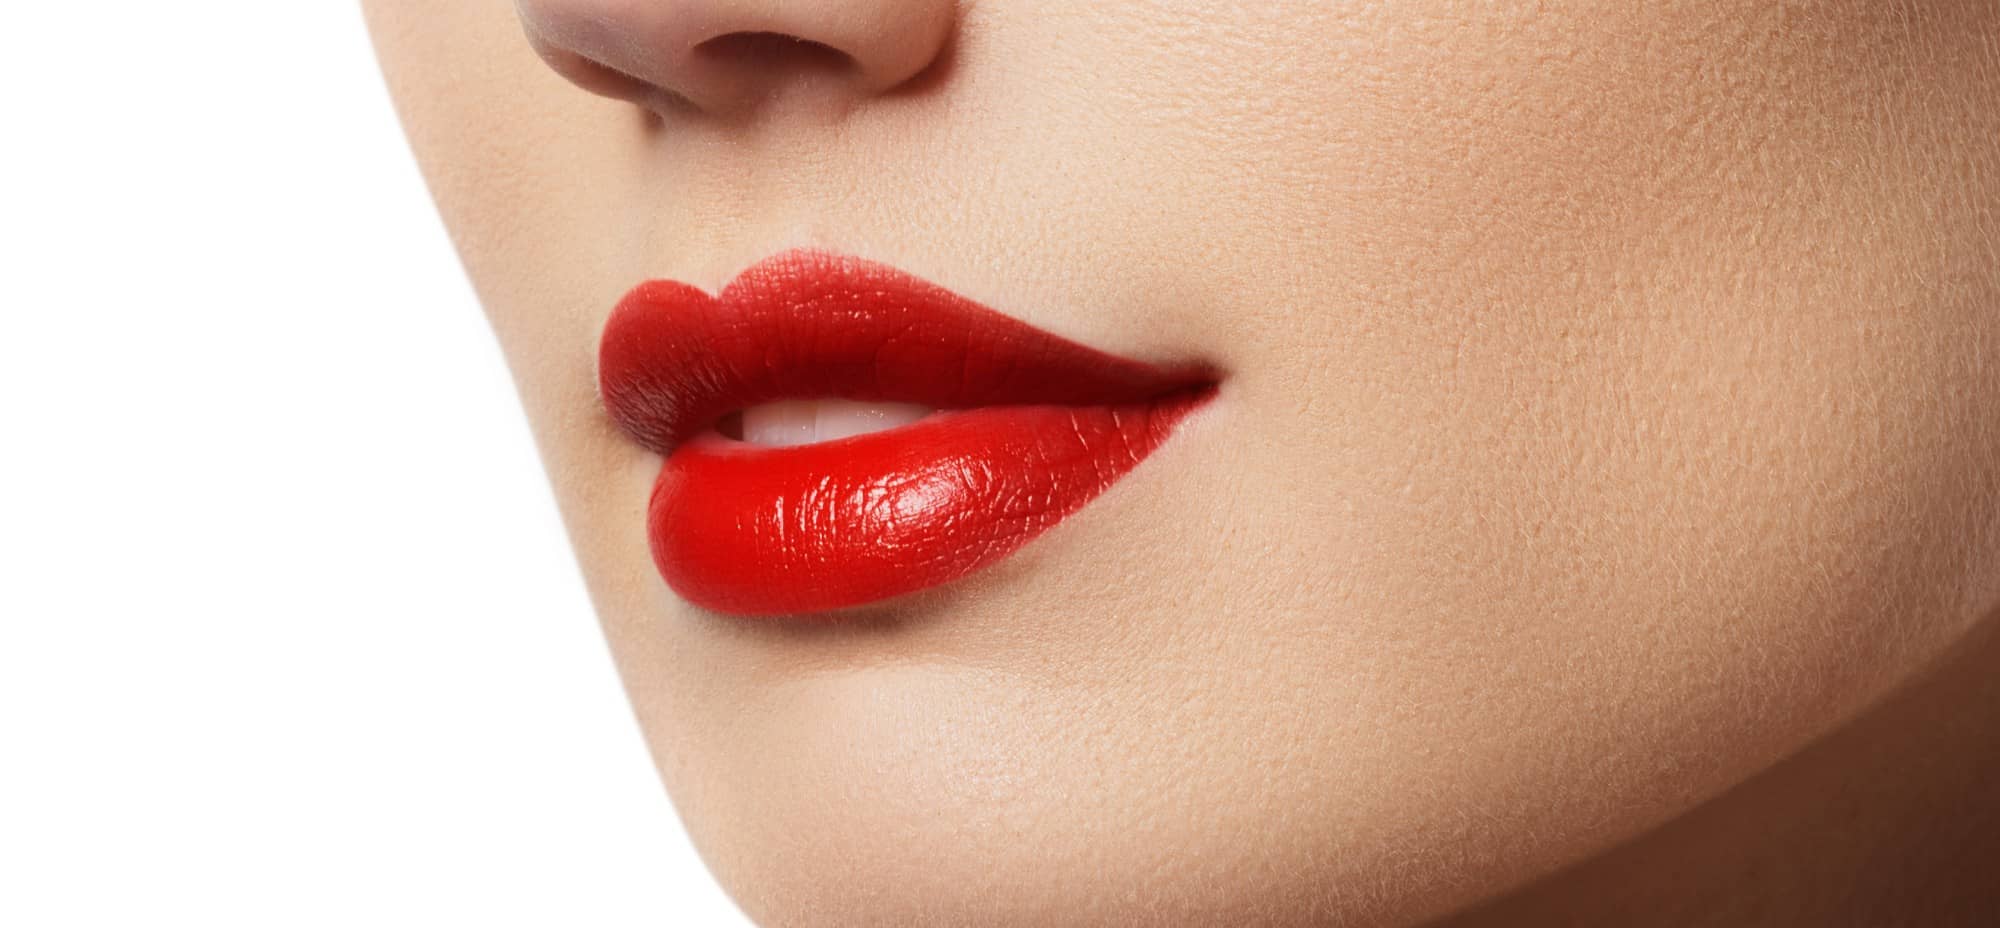 Les Russian lips : des lèvres pulpeuses sans chirurgie ! | Dr Cornil | Nice